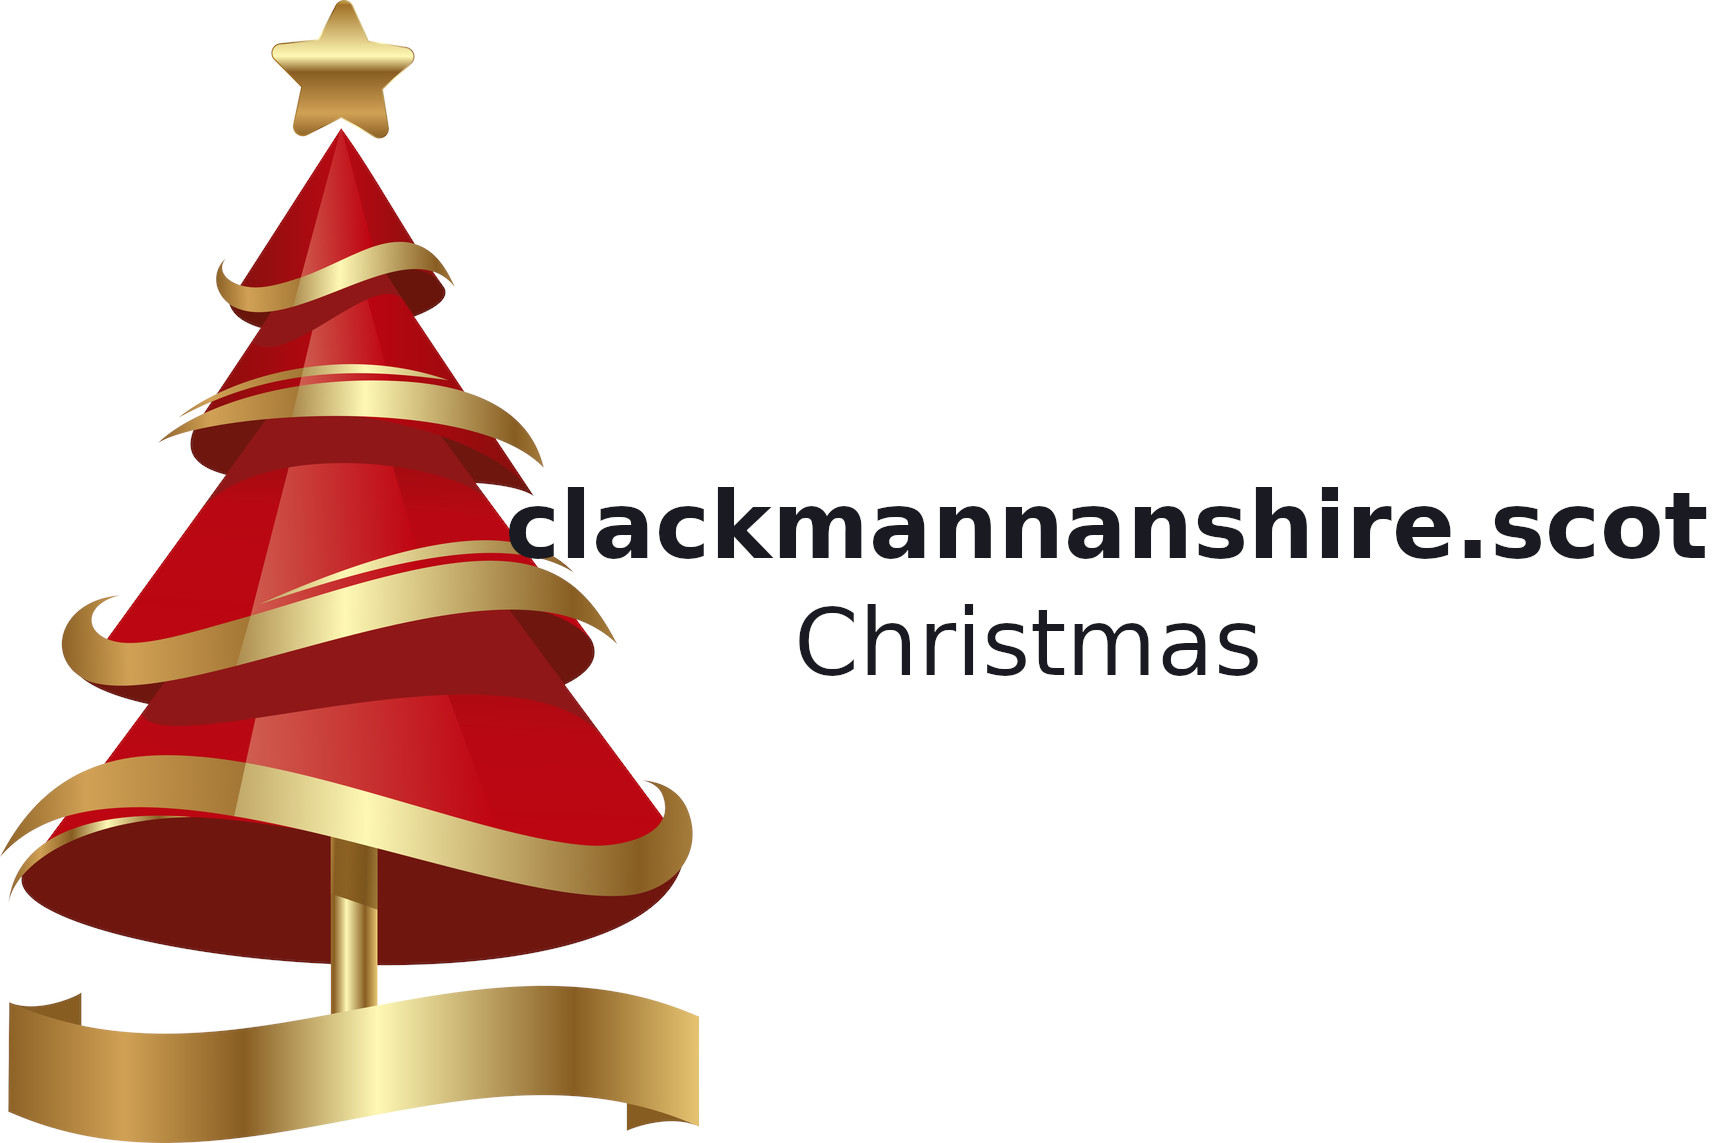 Clackmannanshire.Scot - Christmas